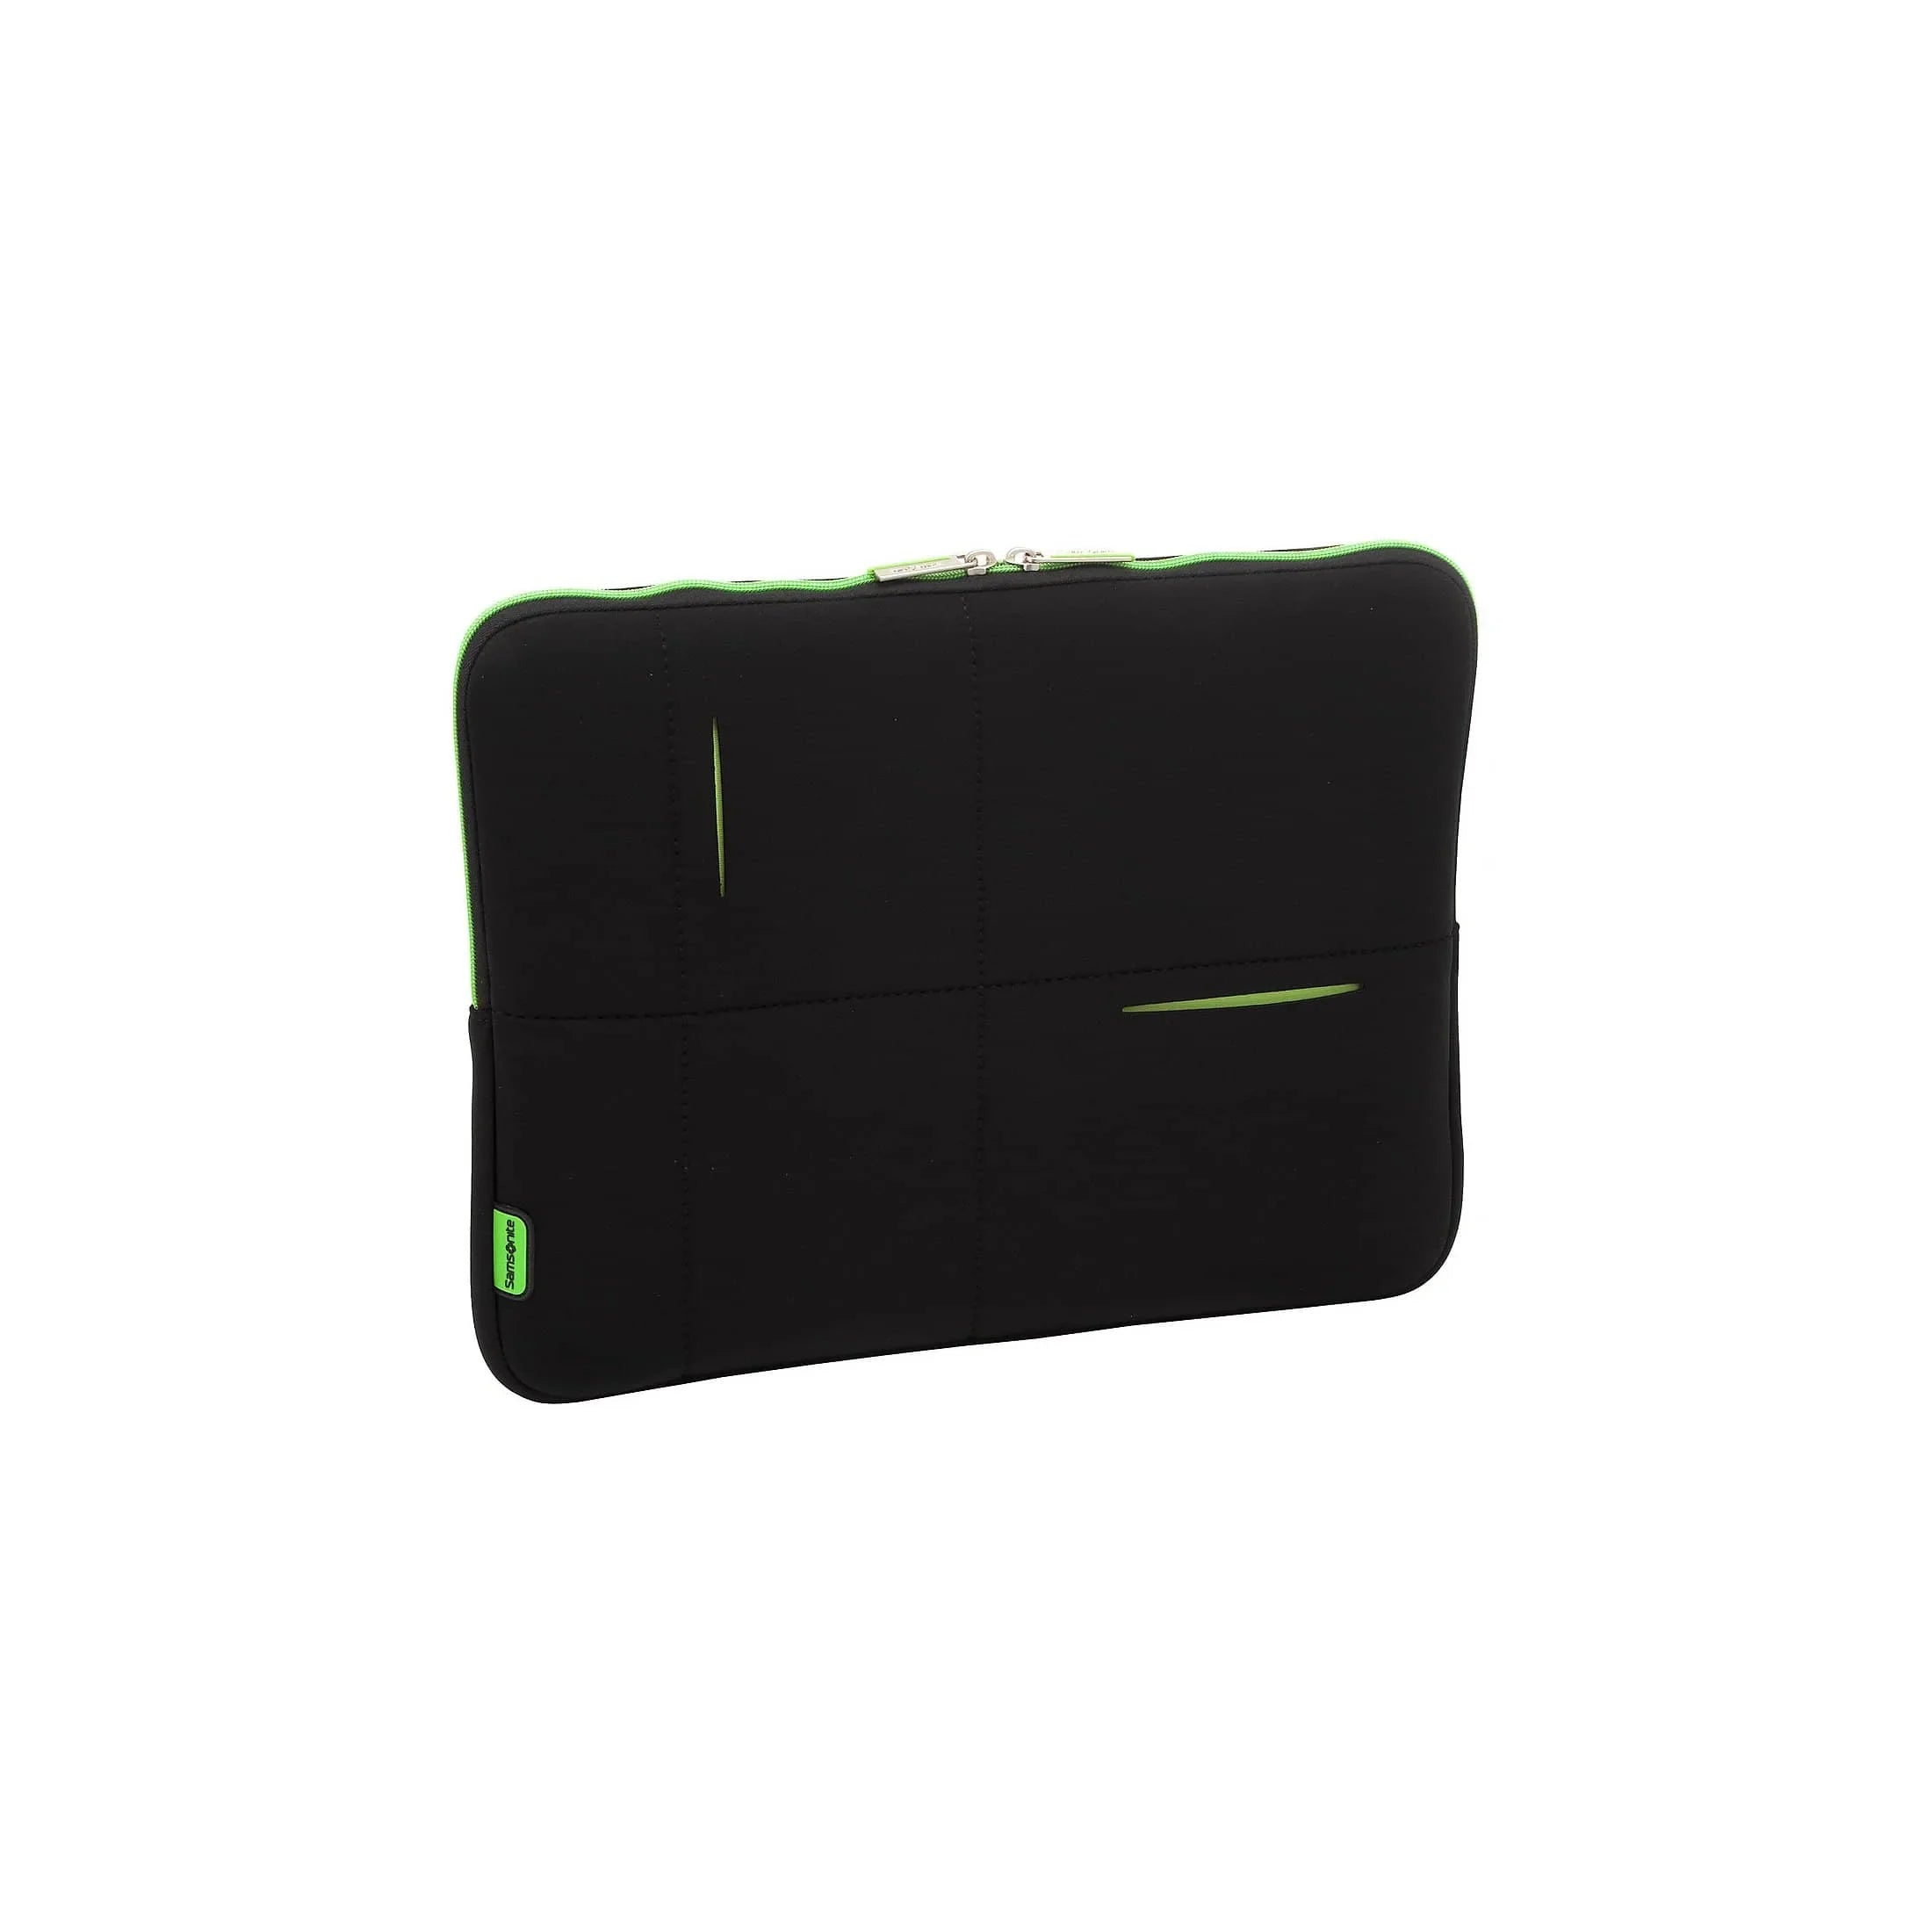 Samsonite Airglow laptop sleeve 40 cm - black/red